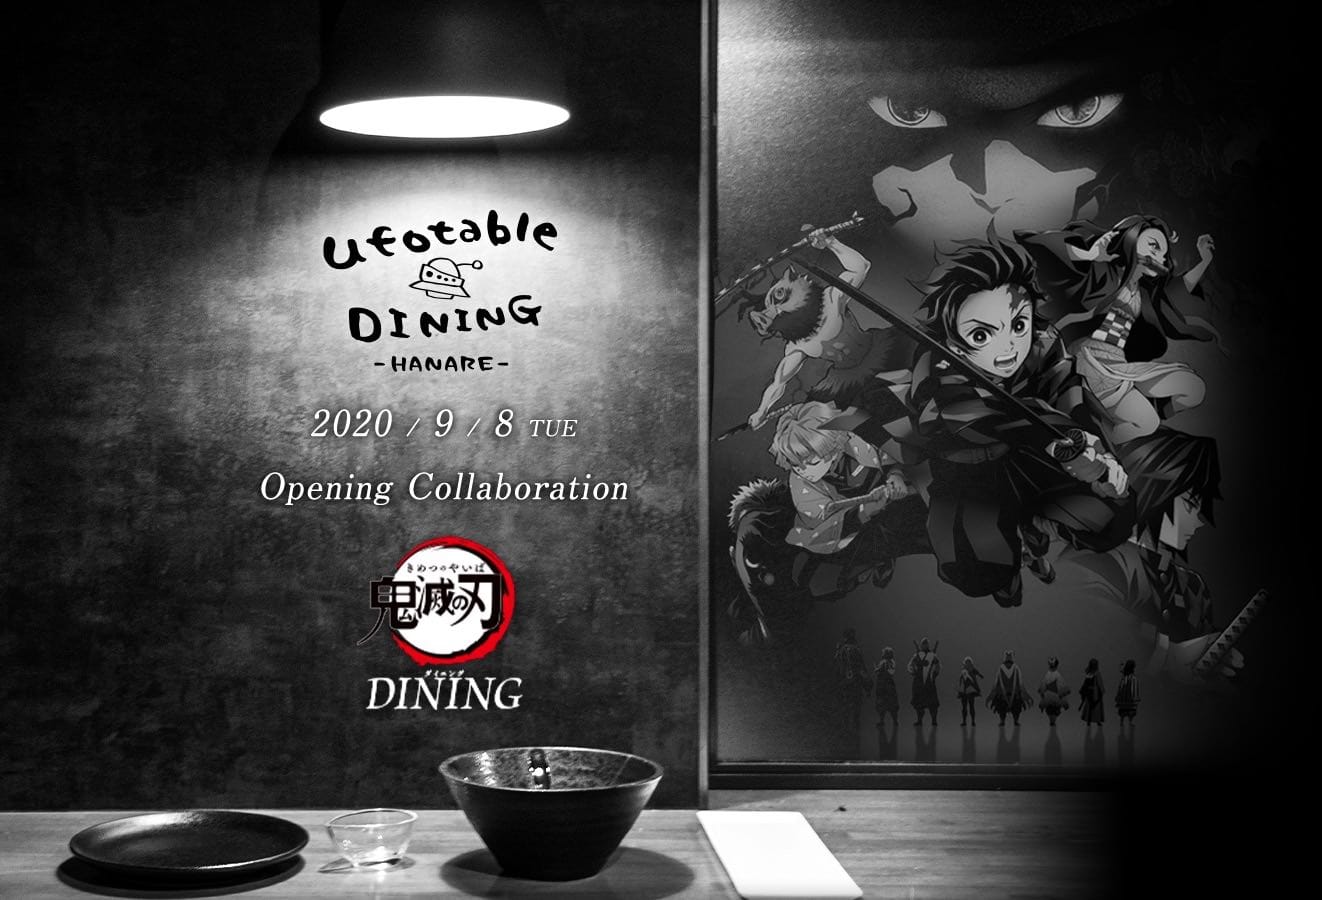 鬼滅の刃ダイニング In Ufotable Dining Hanare 9月8日よりコラボ開催